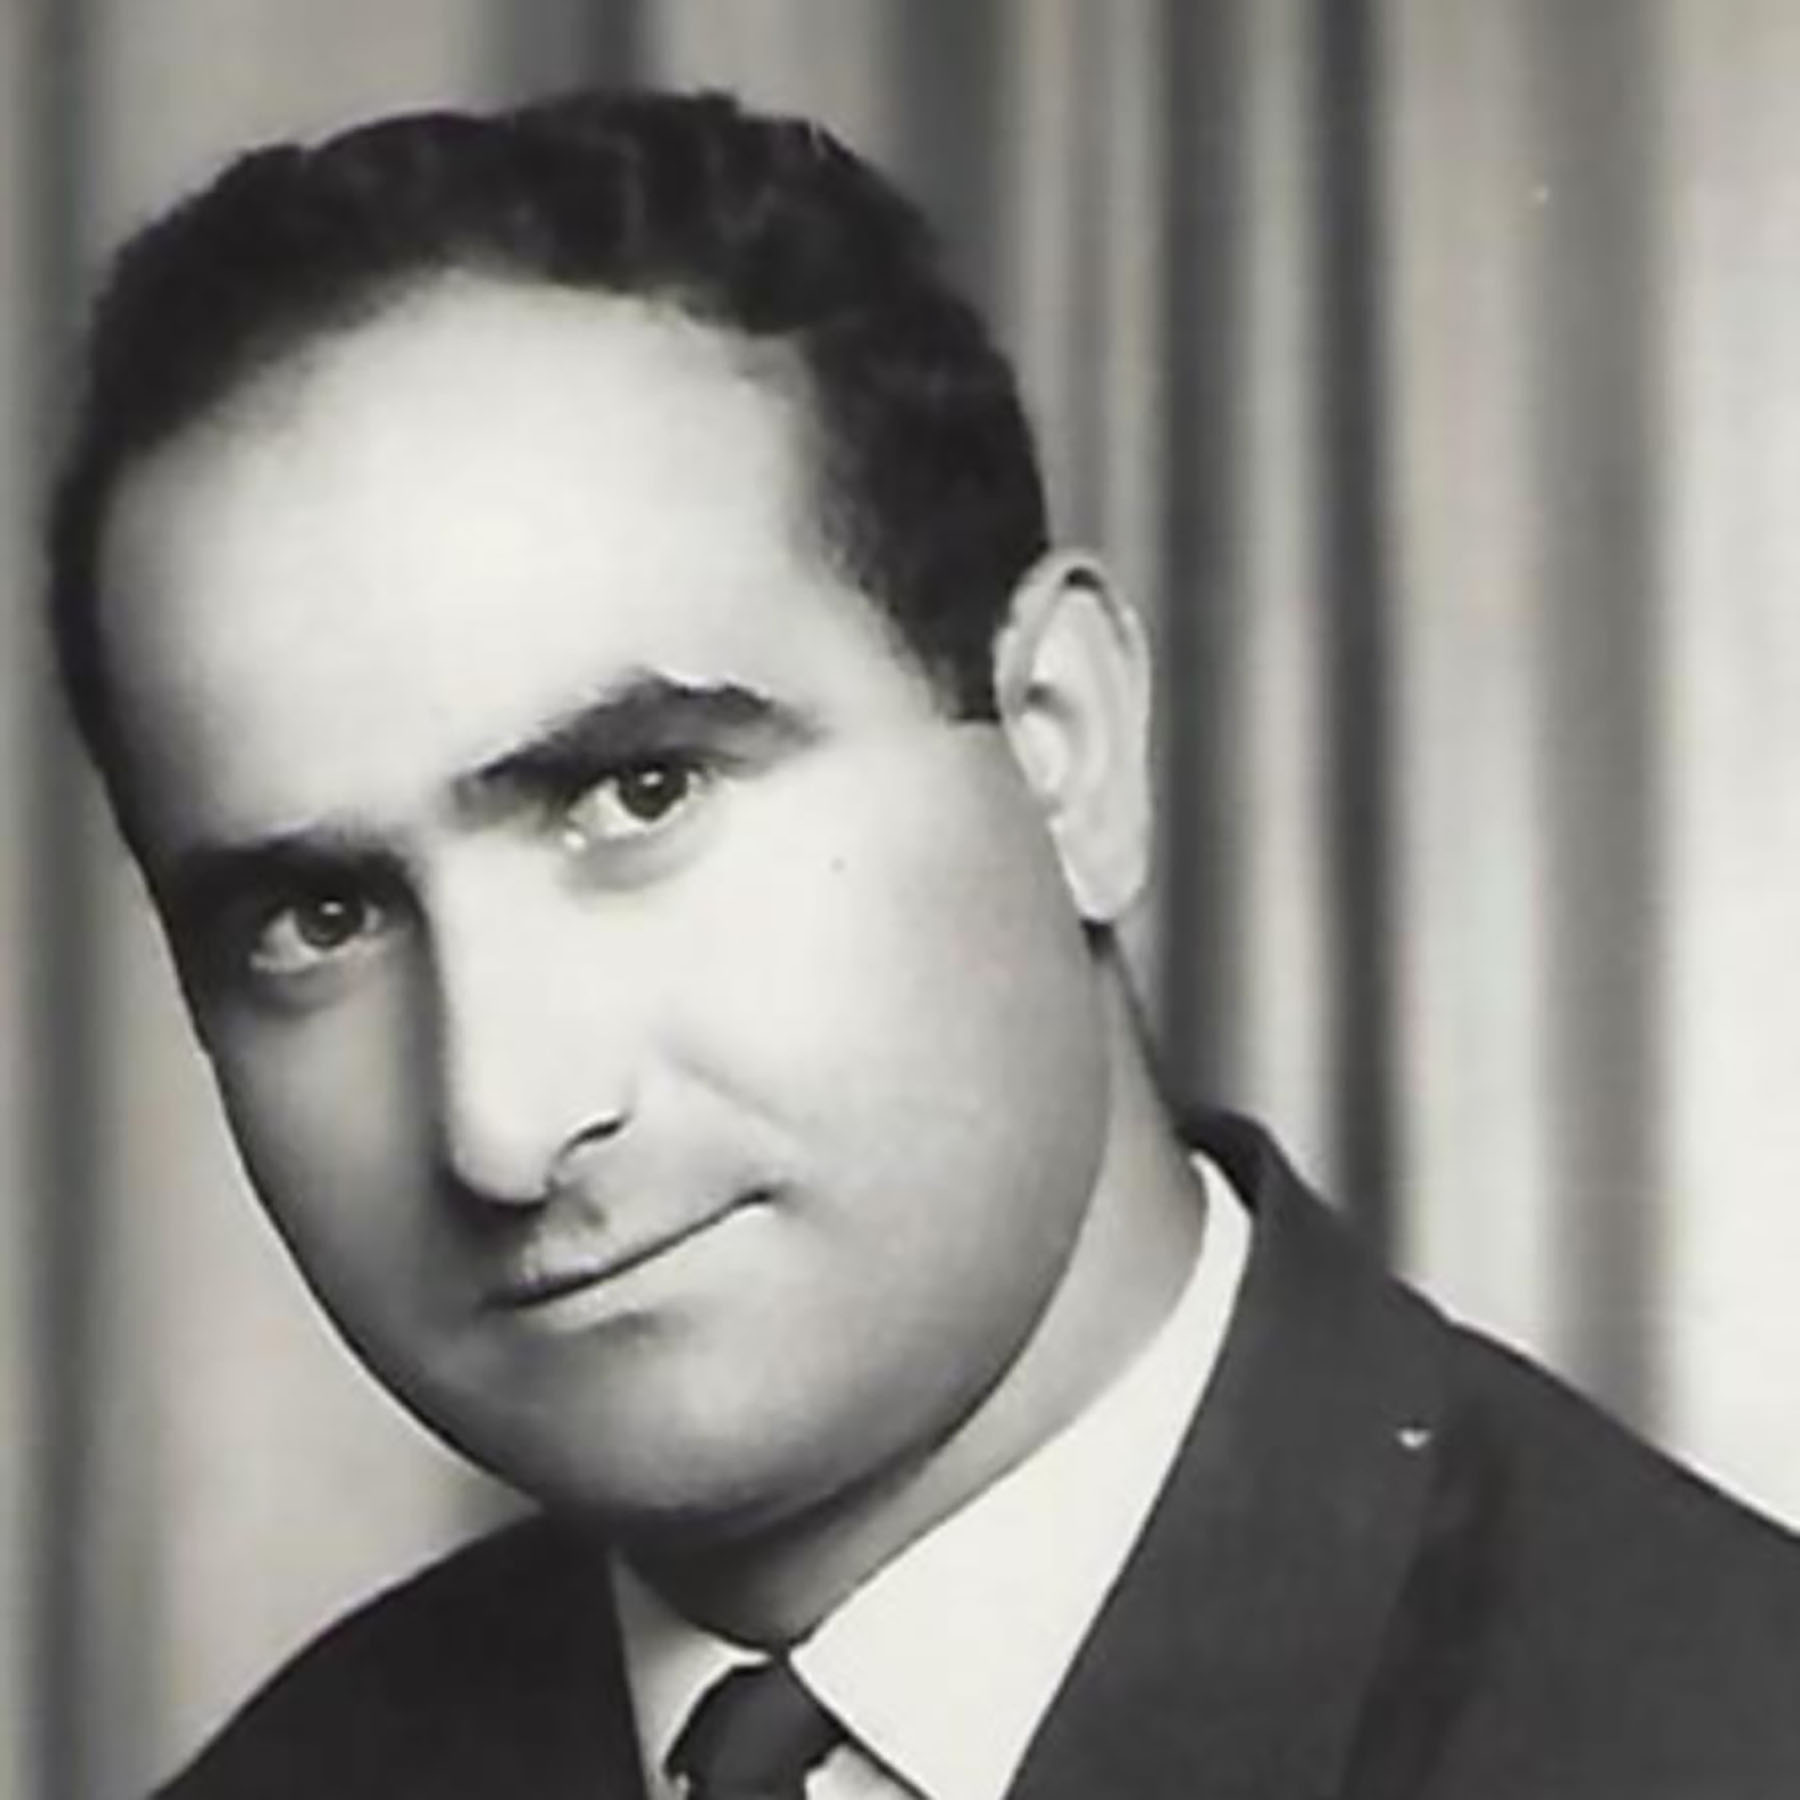 Susie Talevski's late father, Gorgi Talevski